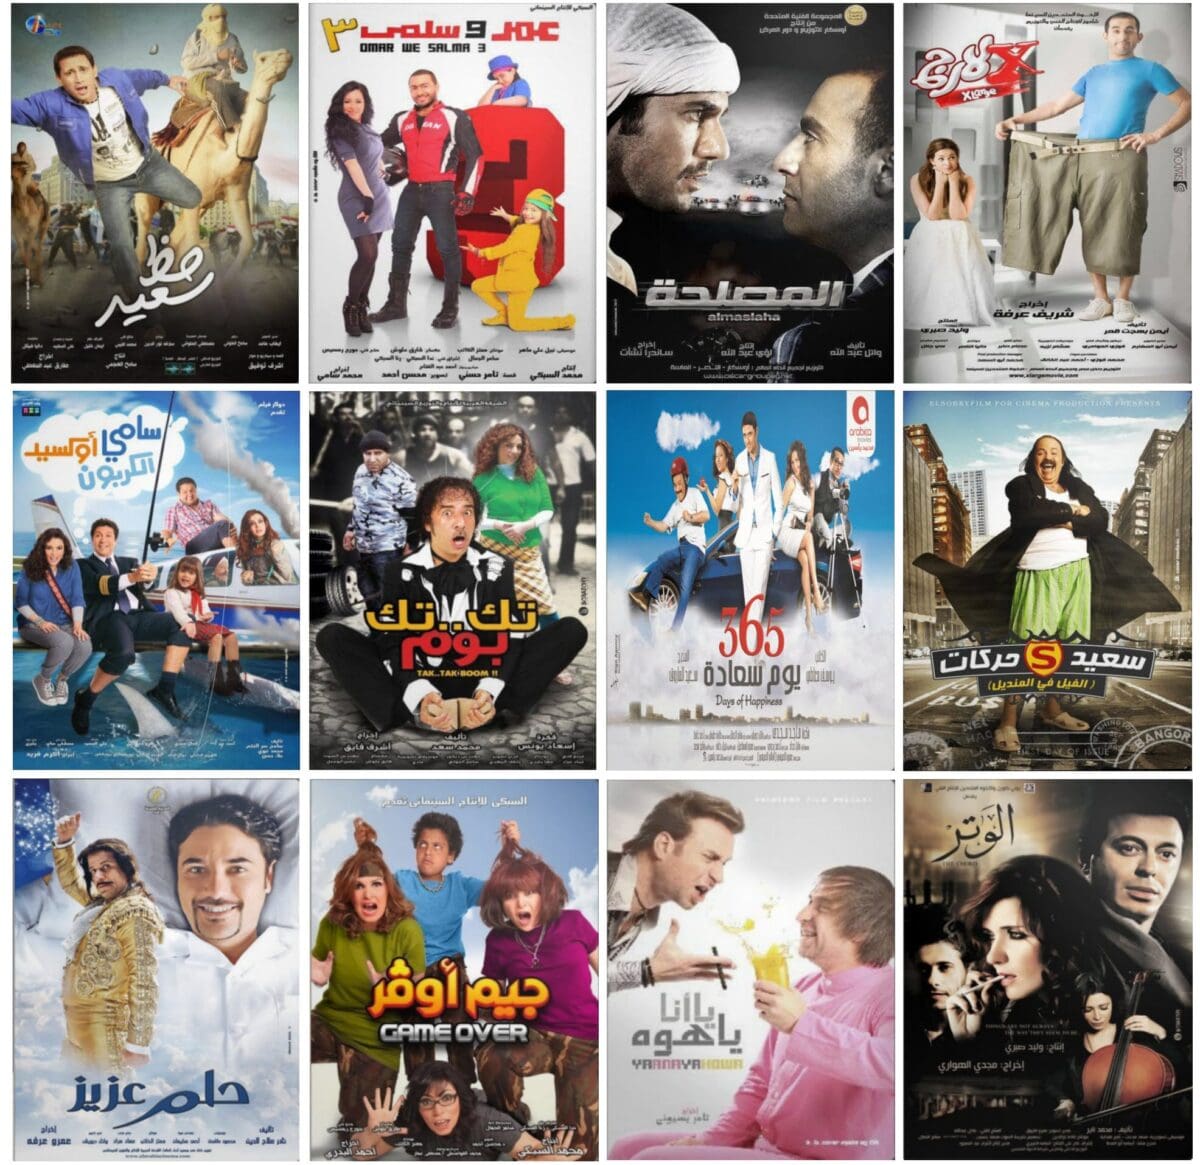 تردد قنوات الأفلام العربي الحديثة والكلاسيك بآخر تحديث على النايل سات استمتع بالمشاهدة مع العائلة